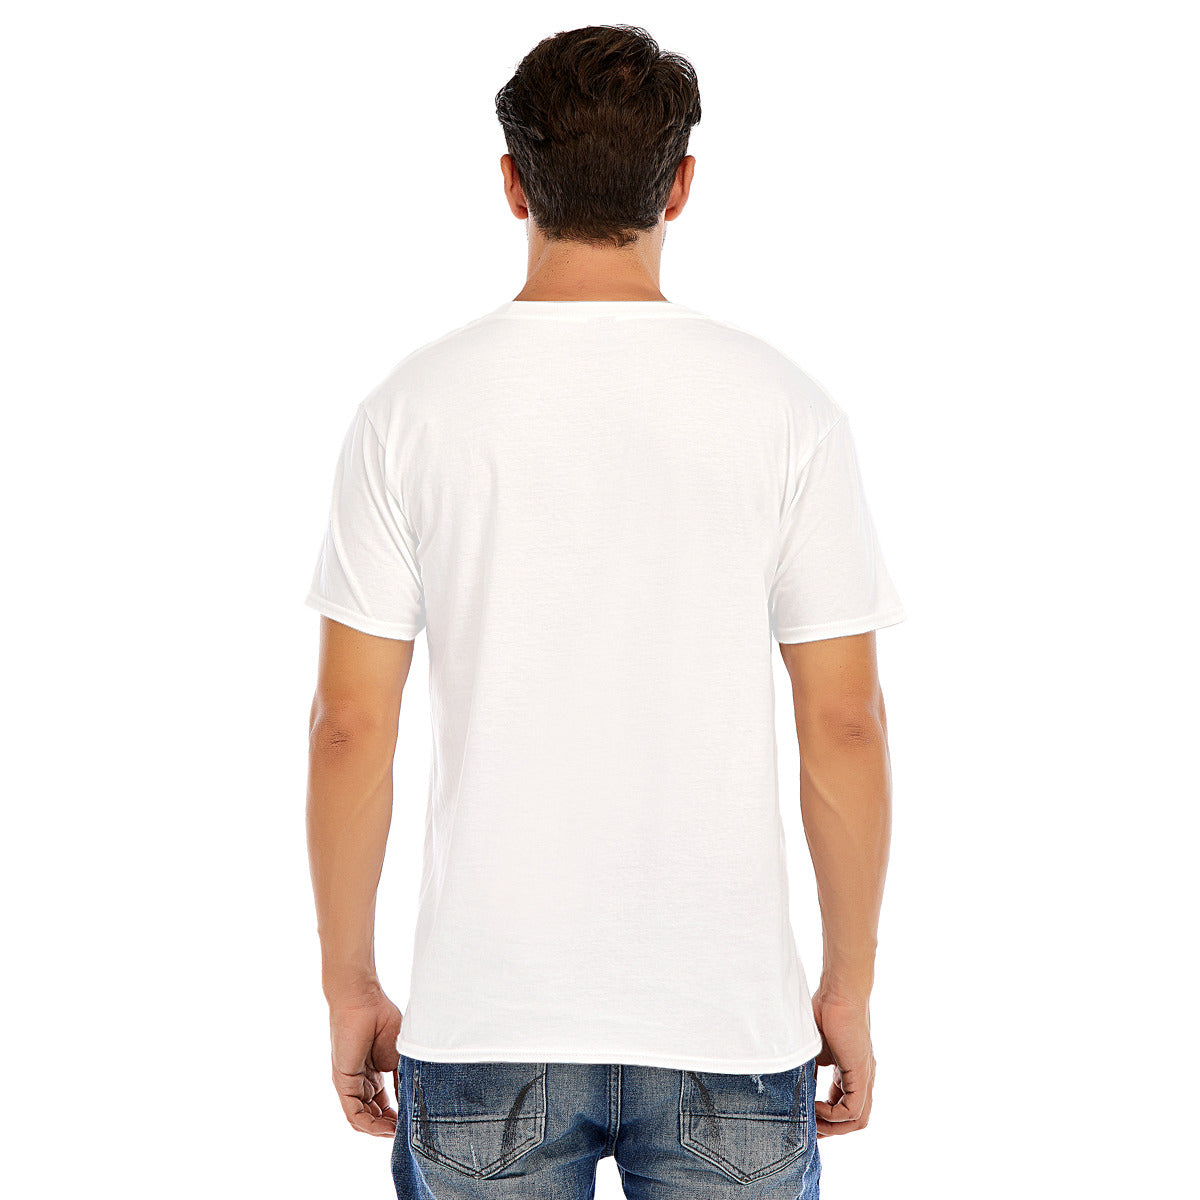 Fantasy 115 -- Unisex O-neck Short Sleeve T-shirt